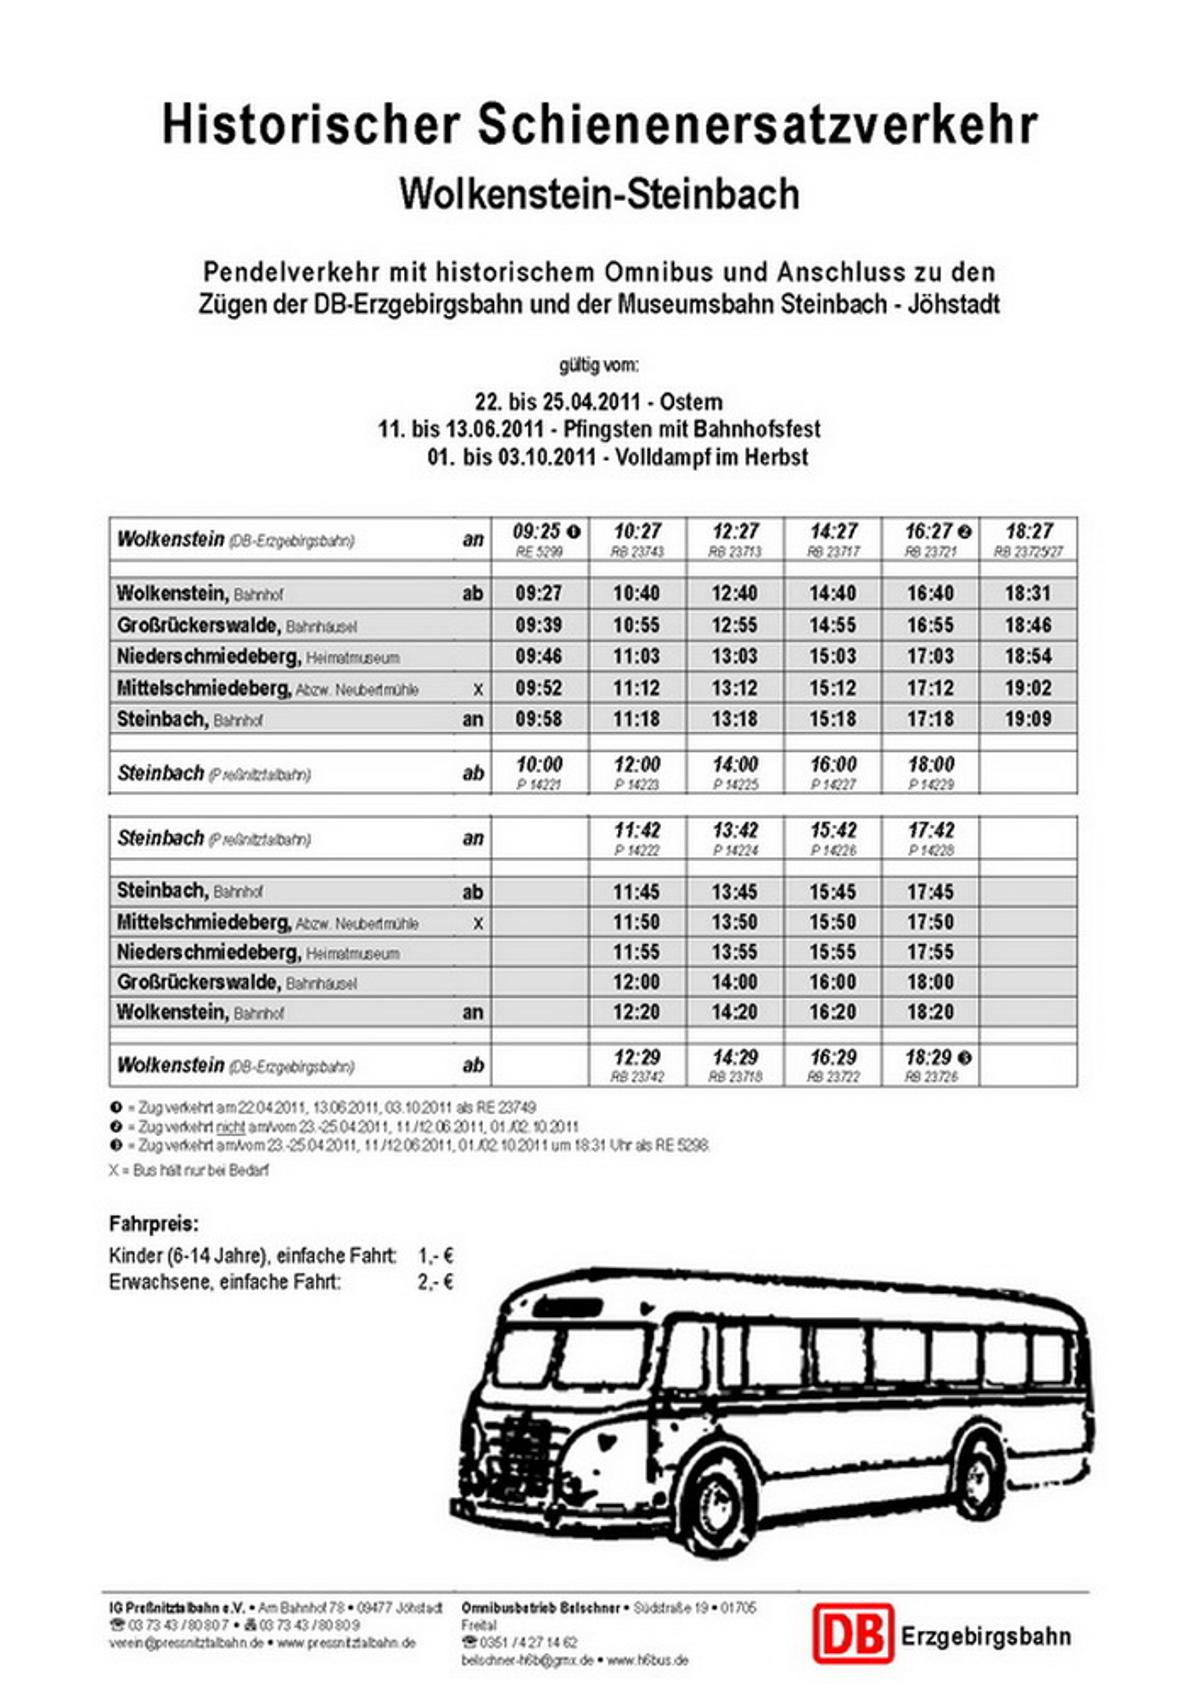 Fahrplan Historischer Schienenersatzverkehr Wolkenstein - Steinbach zu Ostern 2011